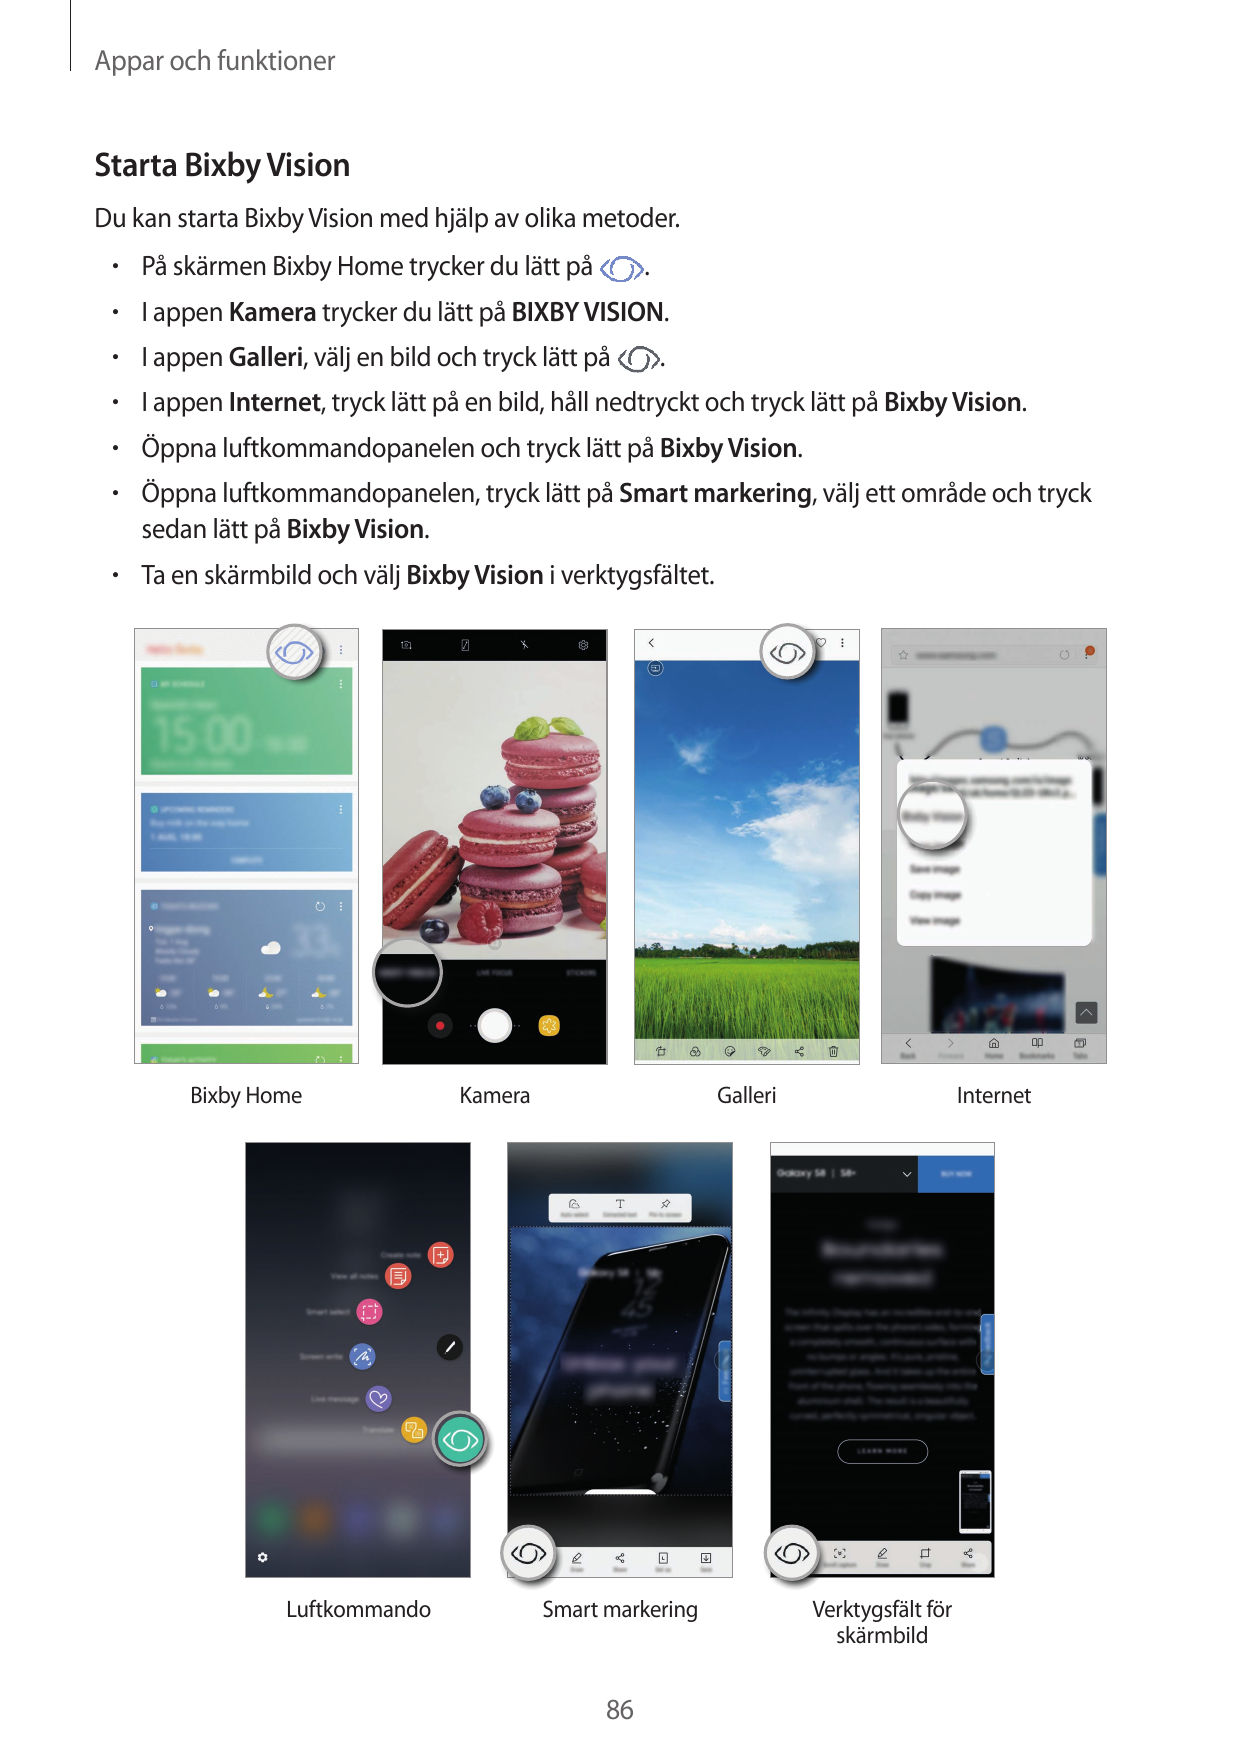 Appar och funktionerStarta Bixby VisionDu kan starta Bixby Vision med hjälp av olika metoder.• På skärmen Bixby Home trycker du 